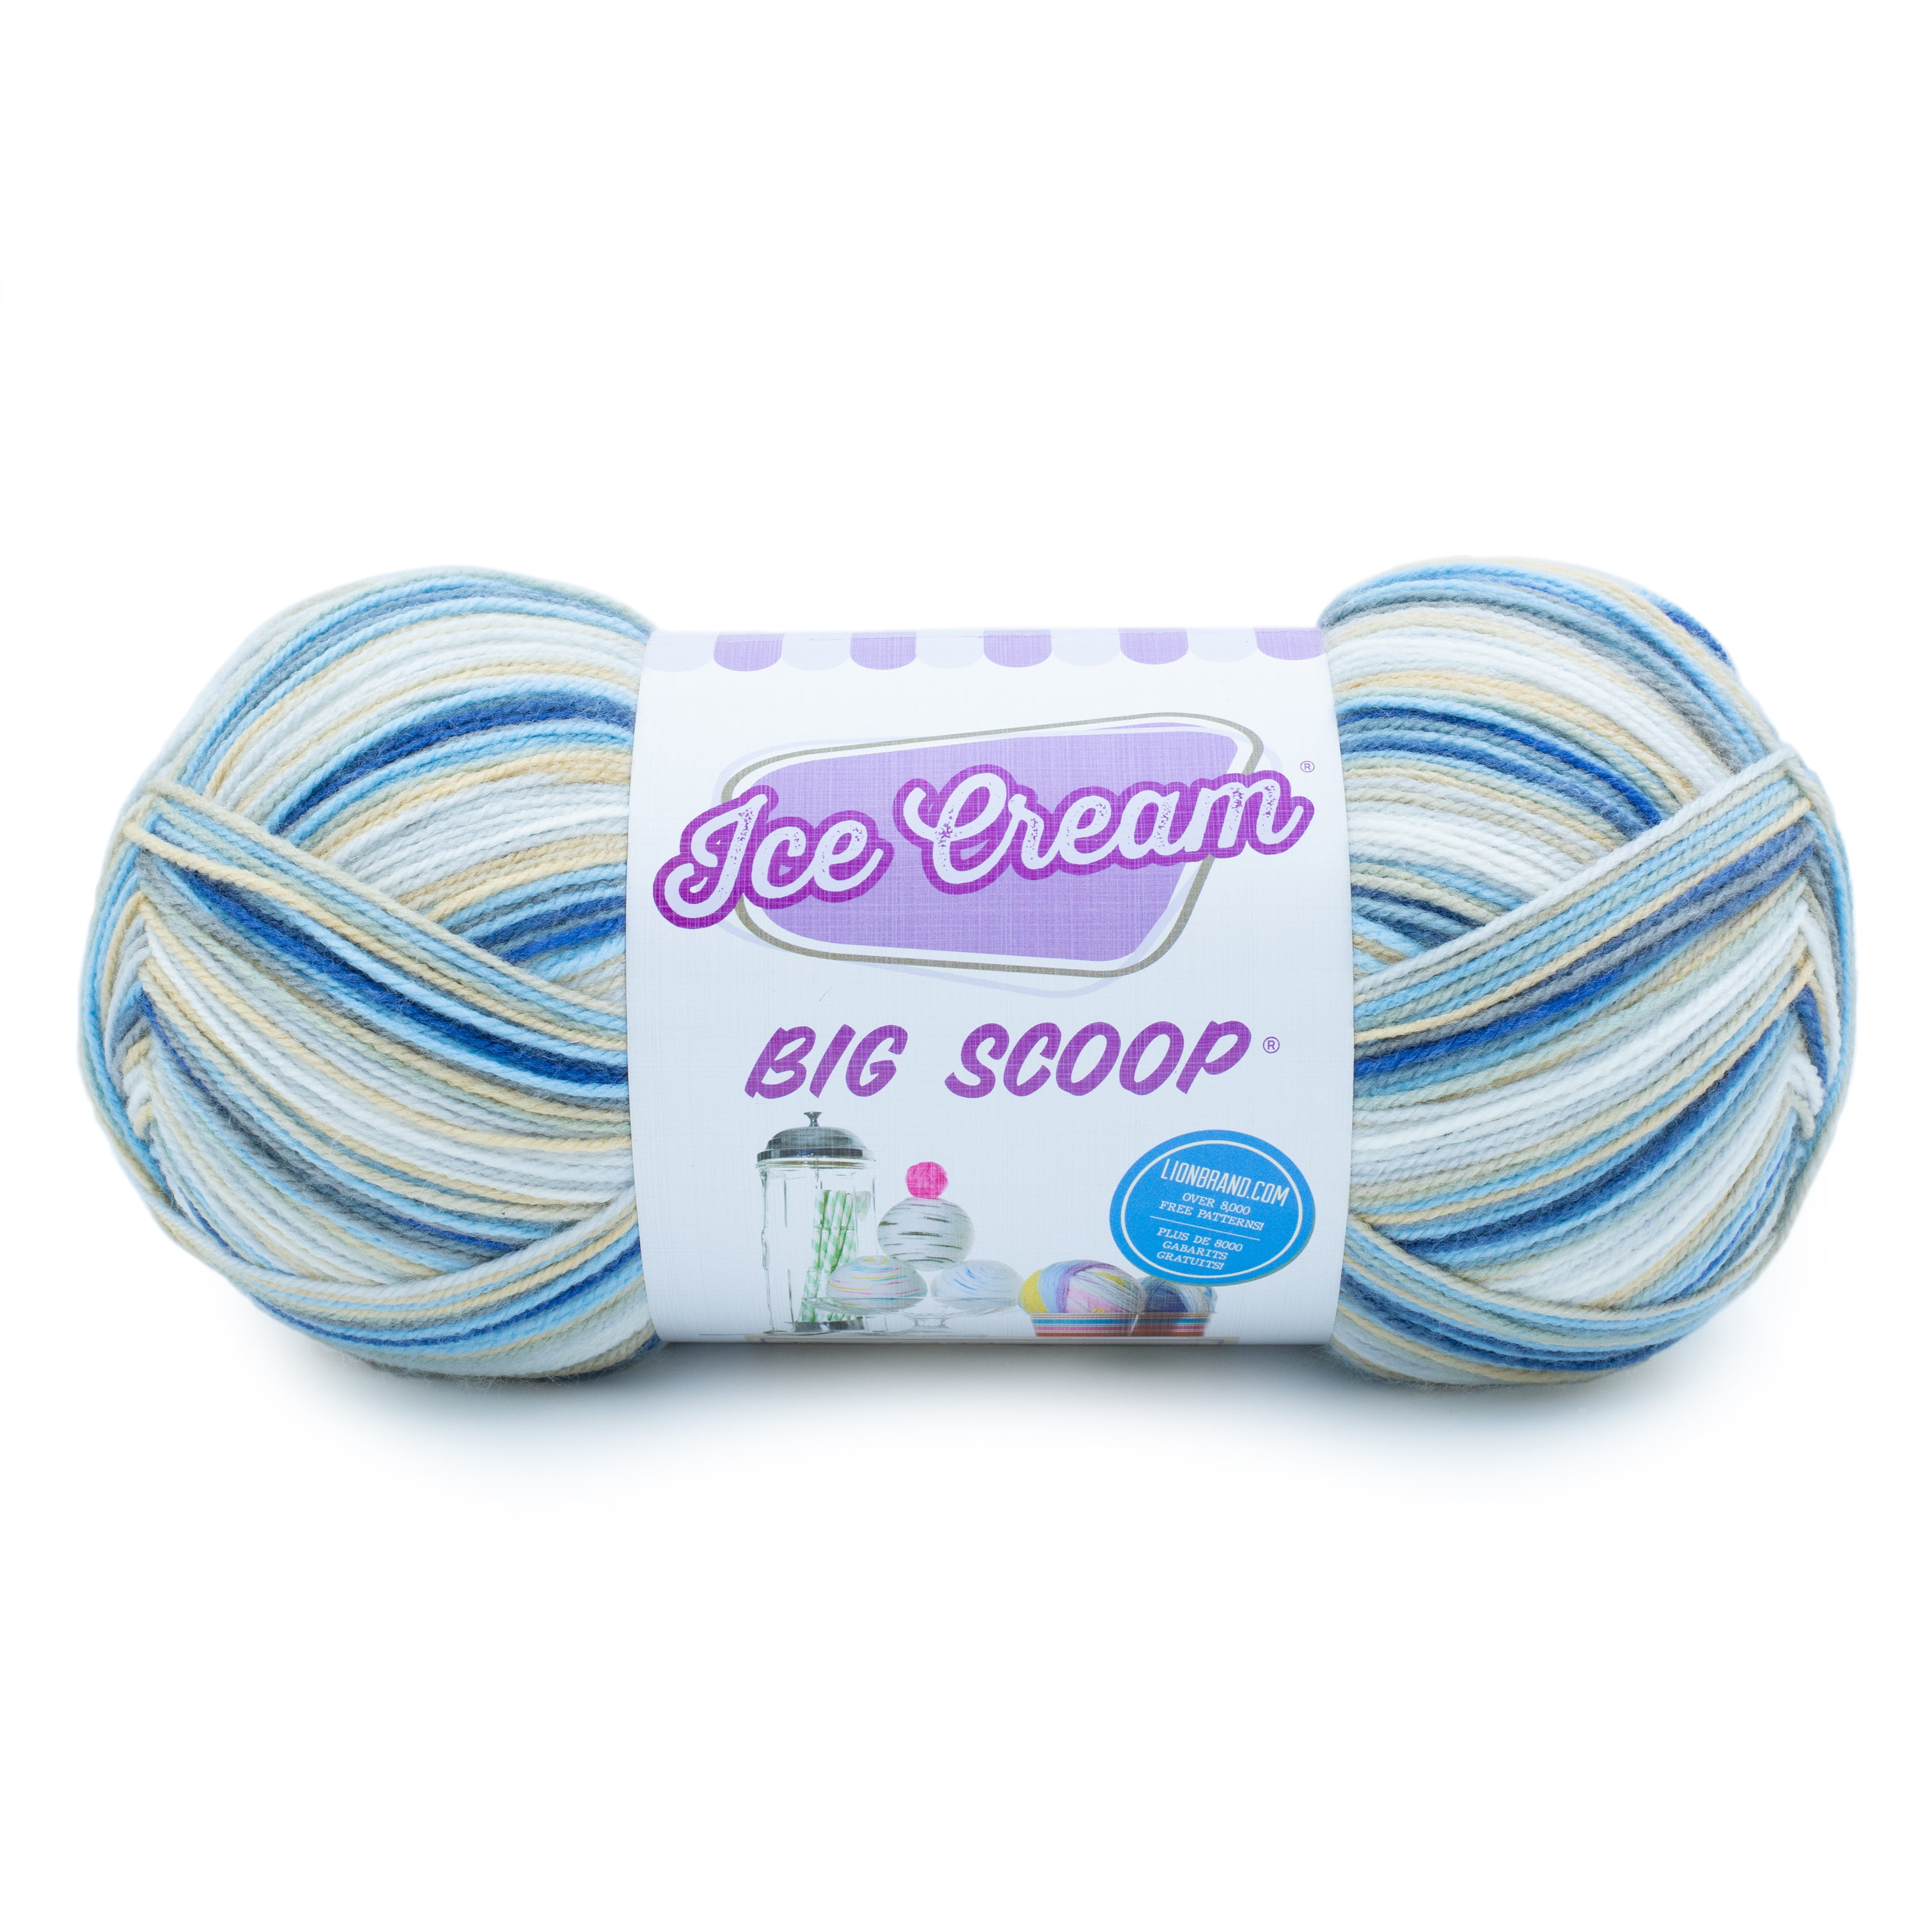  (1 Skein) Lion Brand YarnIce Cream Baby Yarn, Cherries